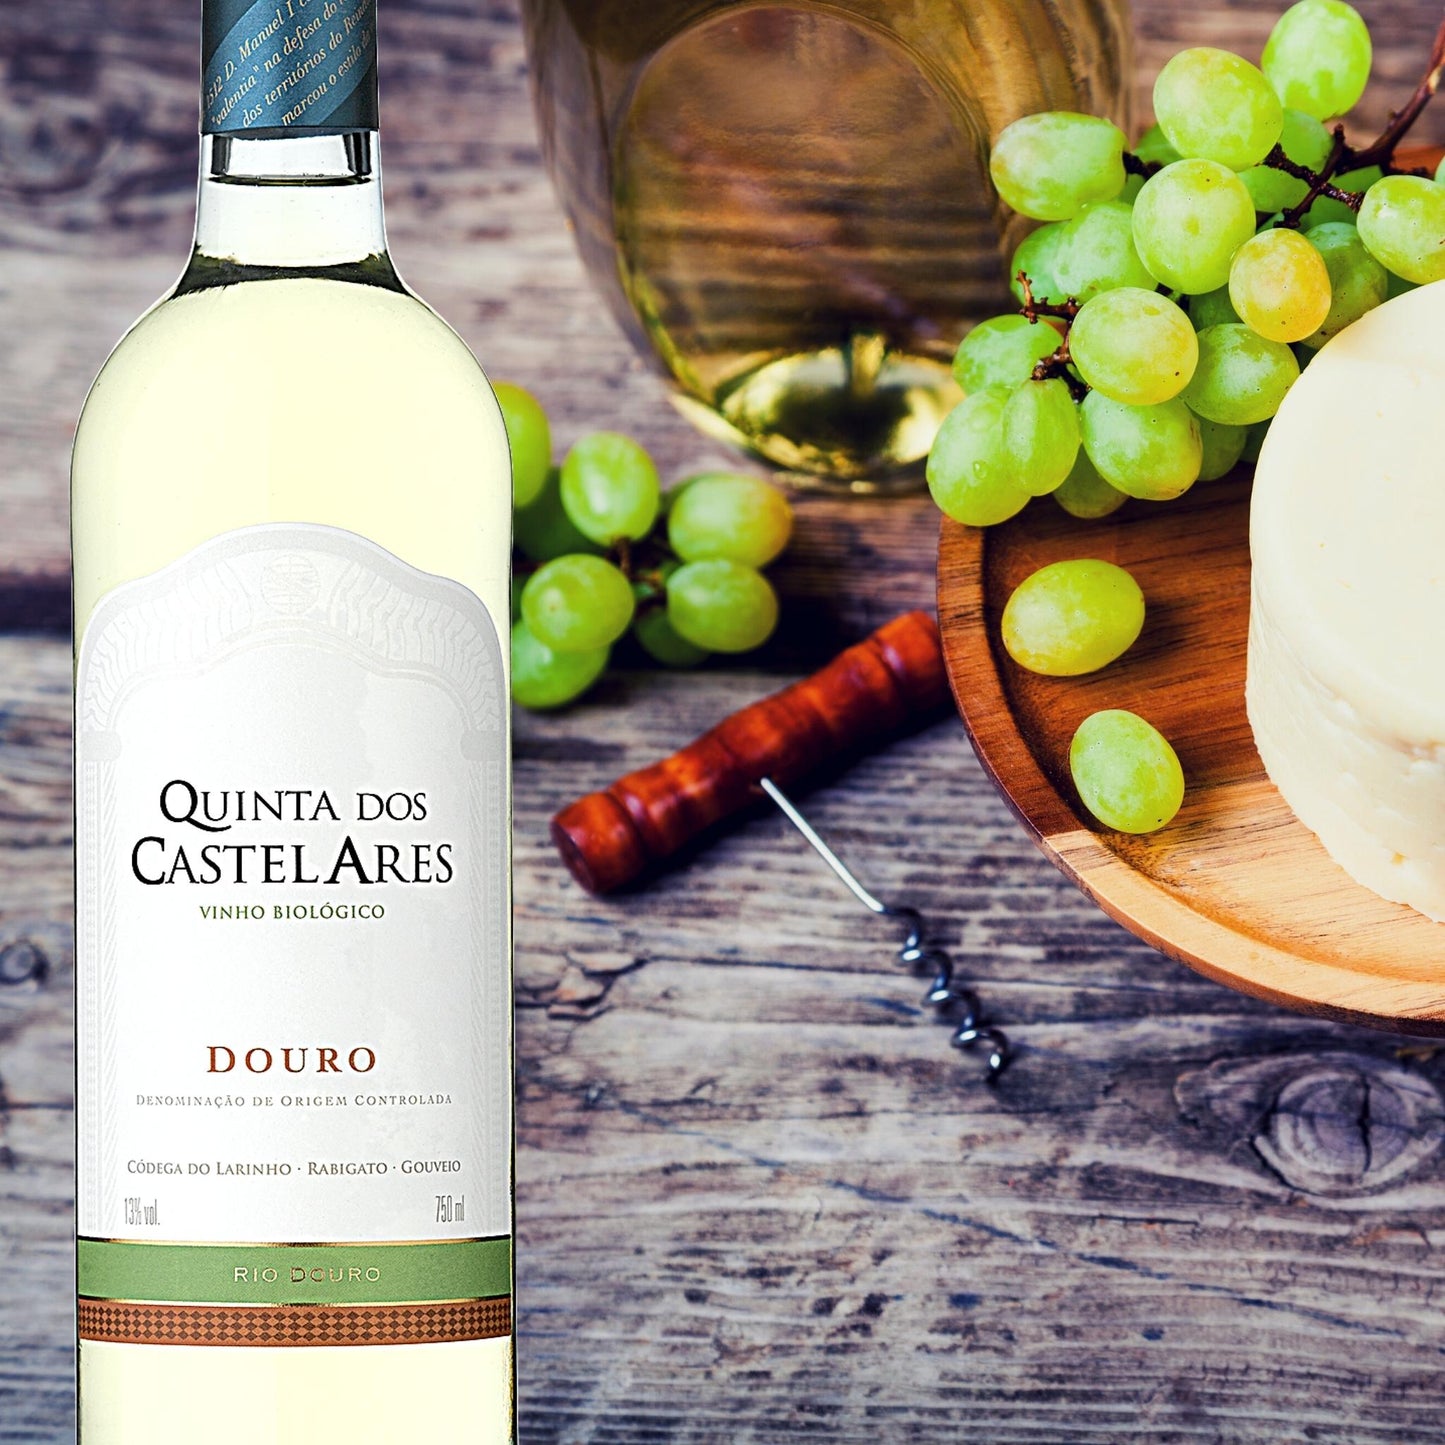 Quinta dos Castelares Colheita Weißwein aus dem Douro / Portugal. Biowein.  Im Hintergrund auf dem Bild: Käse, und Weintrauben auf  einem Holzteller und ein Korkenzieher.